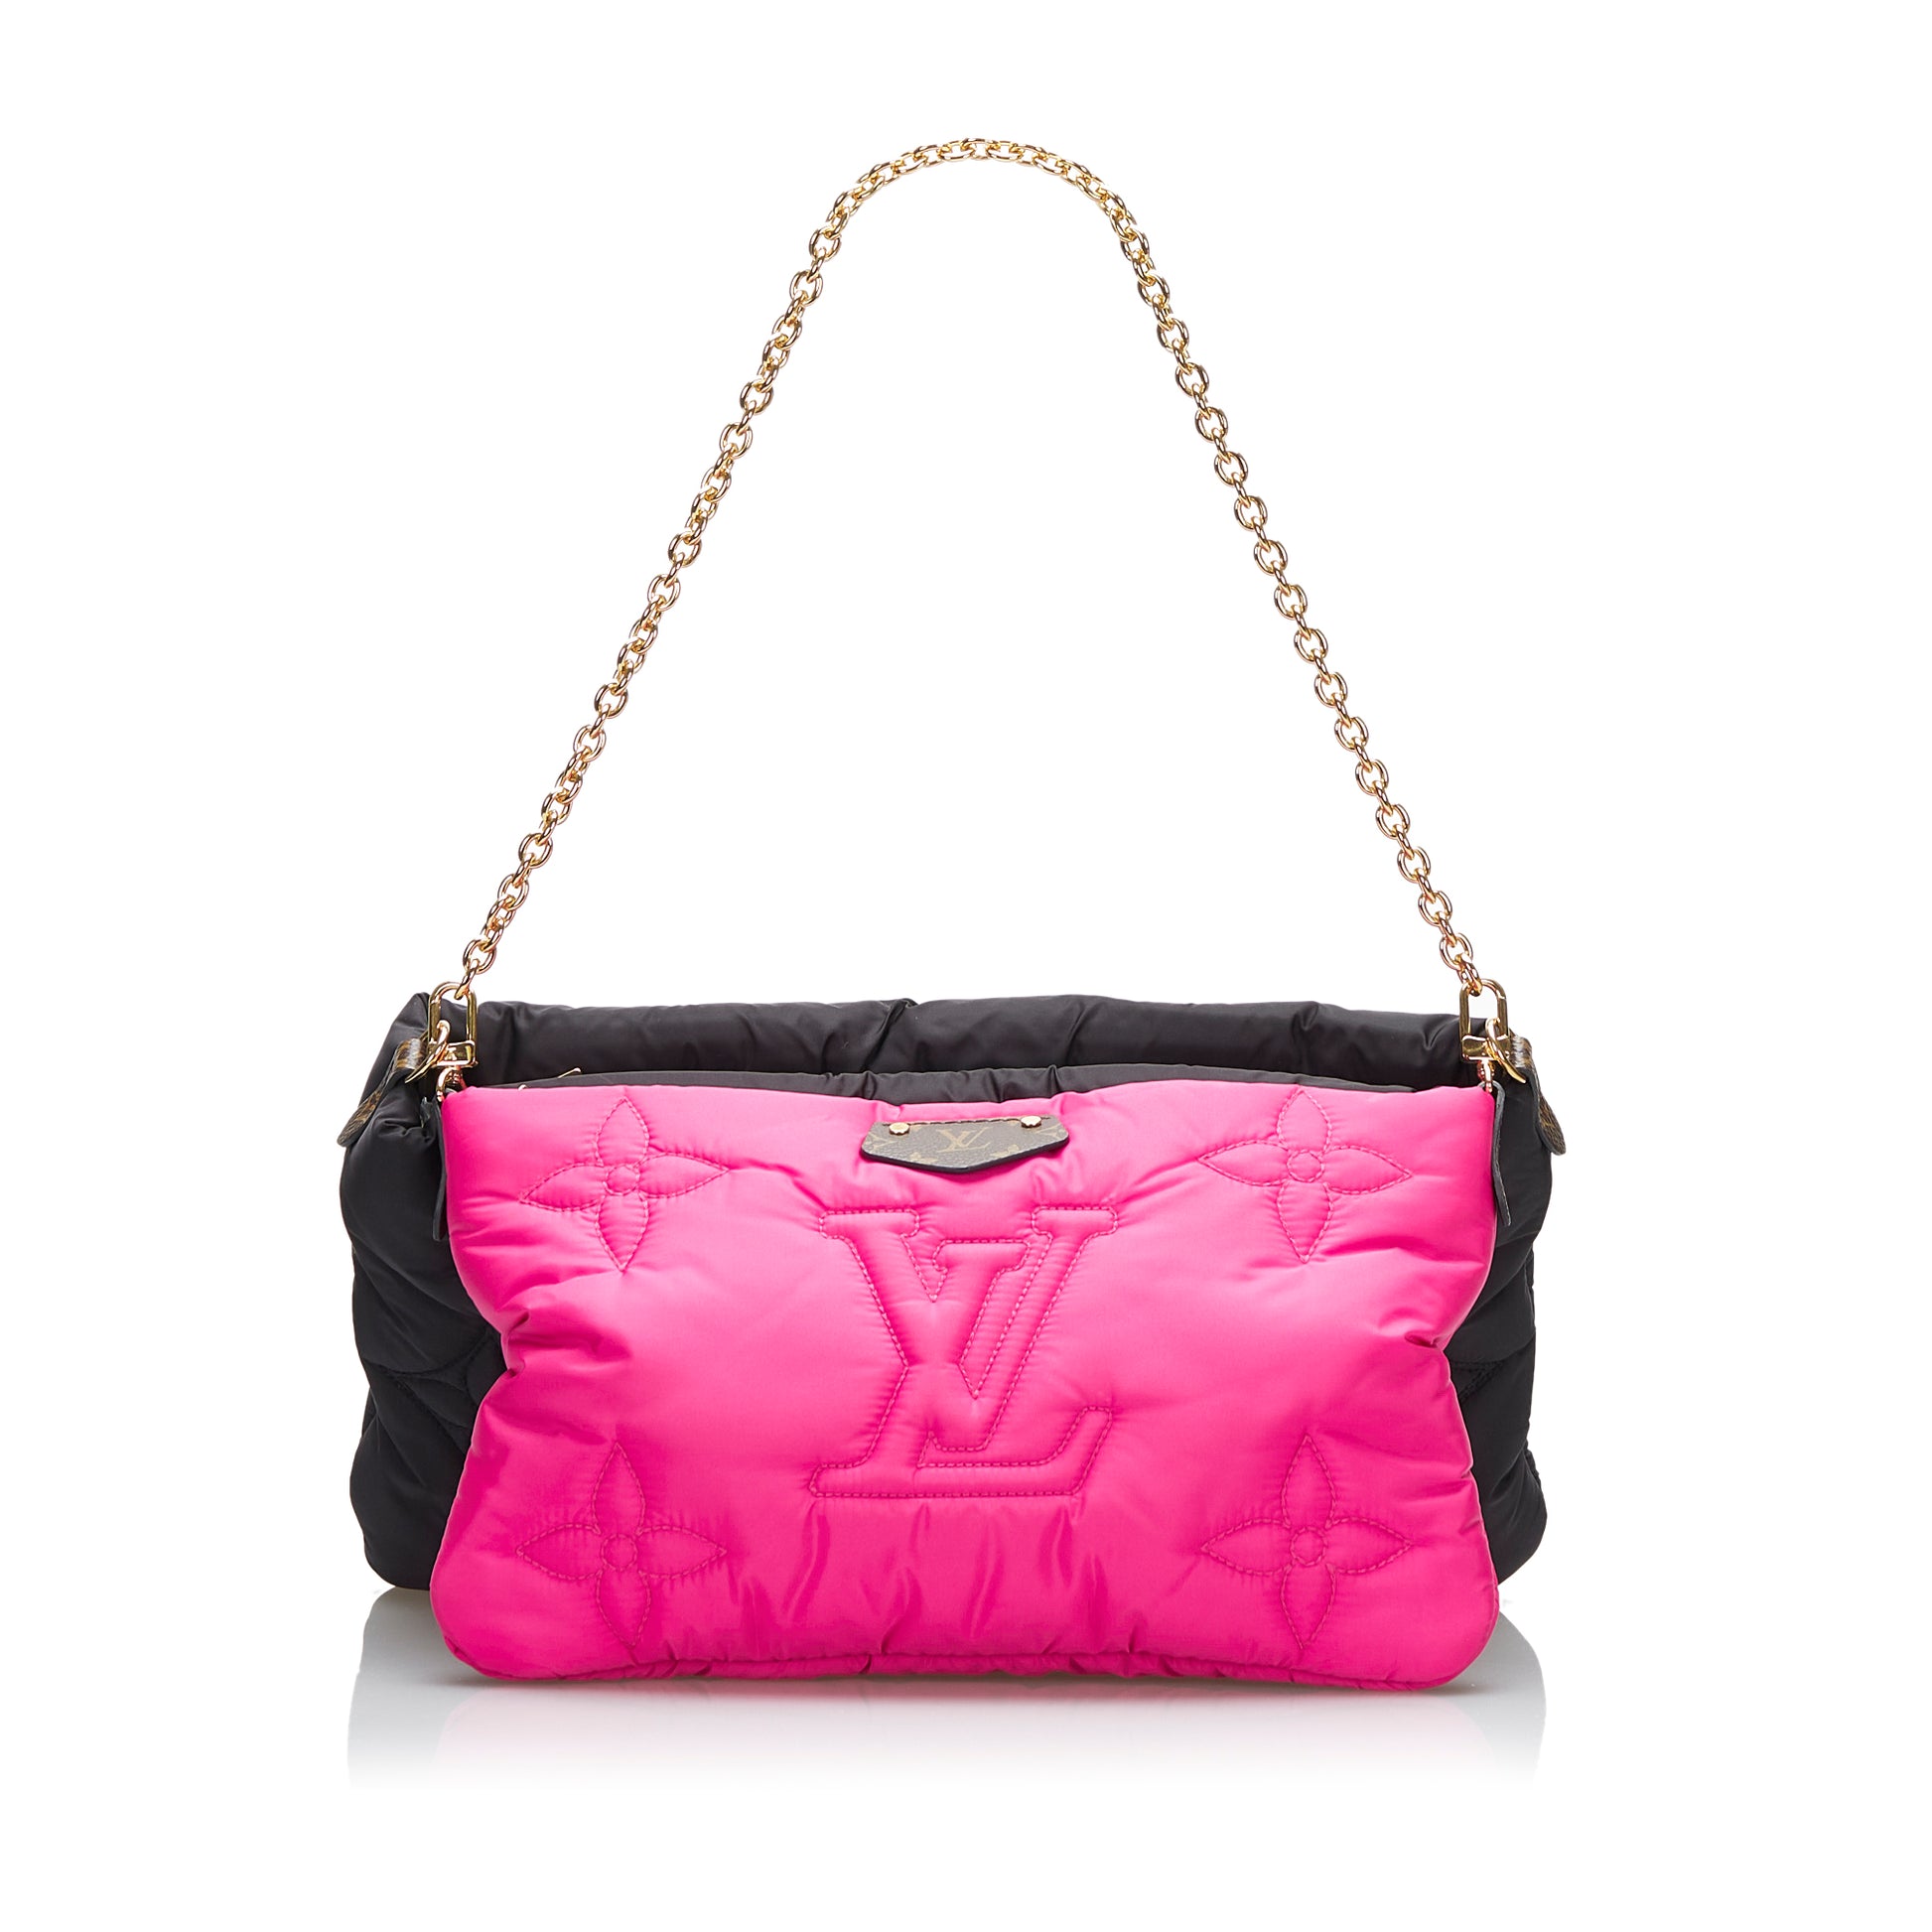 Louis Vuitton, Bags, Louis Vuitton Nylon Strap Multi Pochette Strap